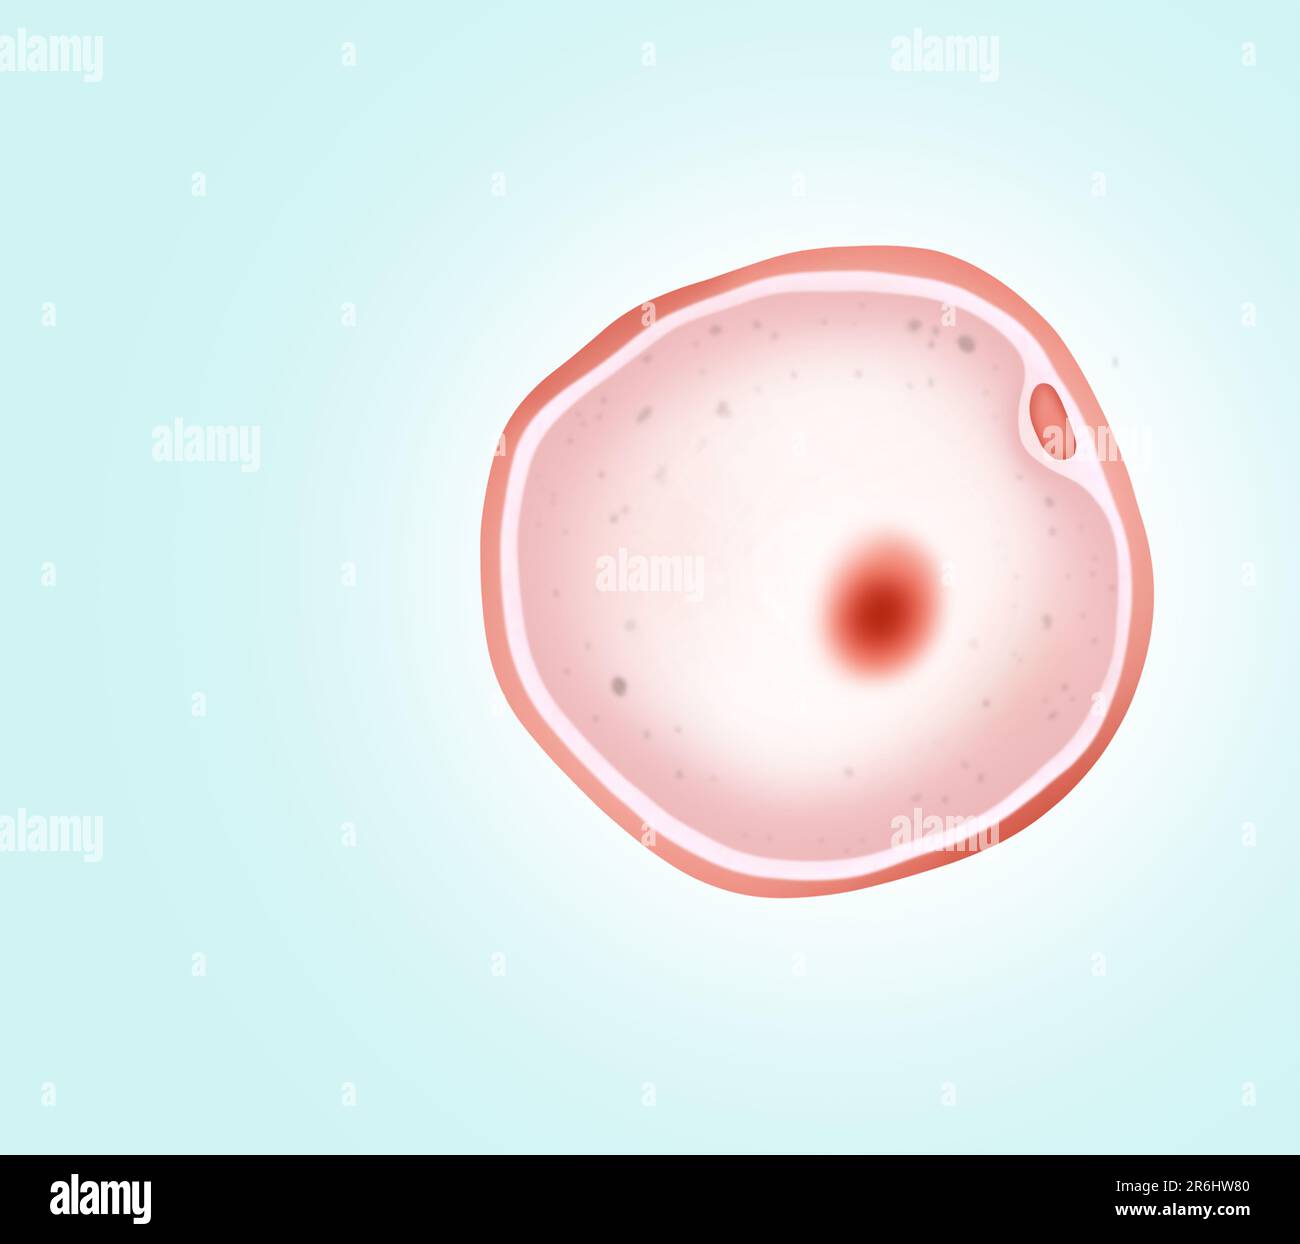 Ovum (egg cell) on light background, illustration Stock Photo